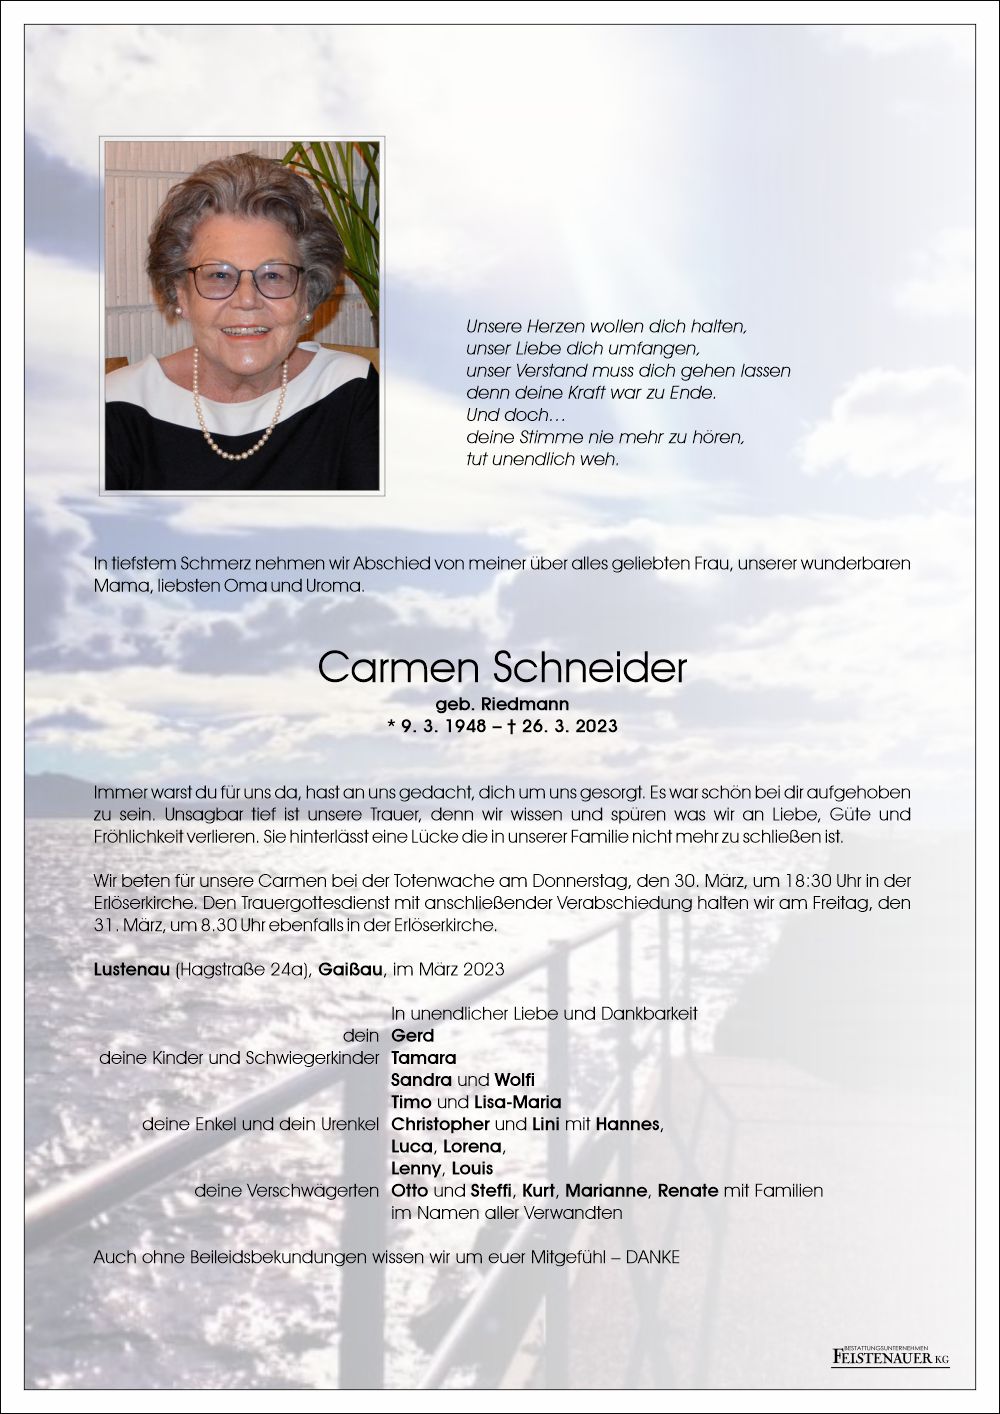 Carmen Schneider